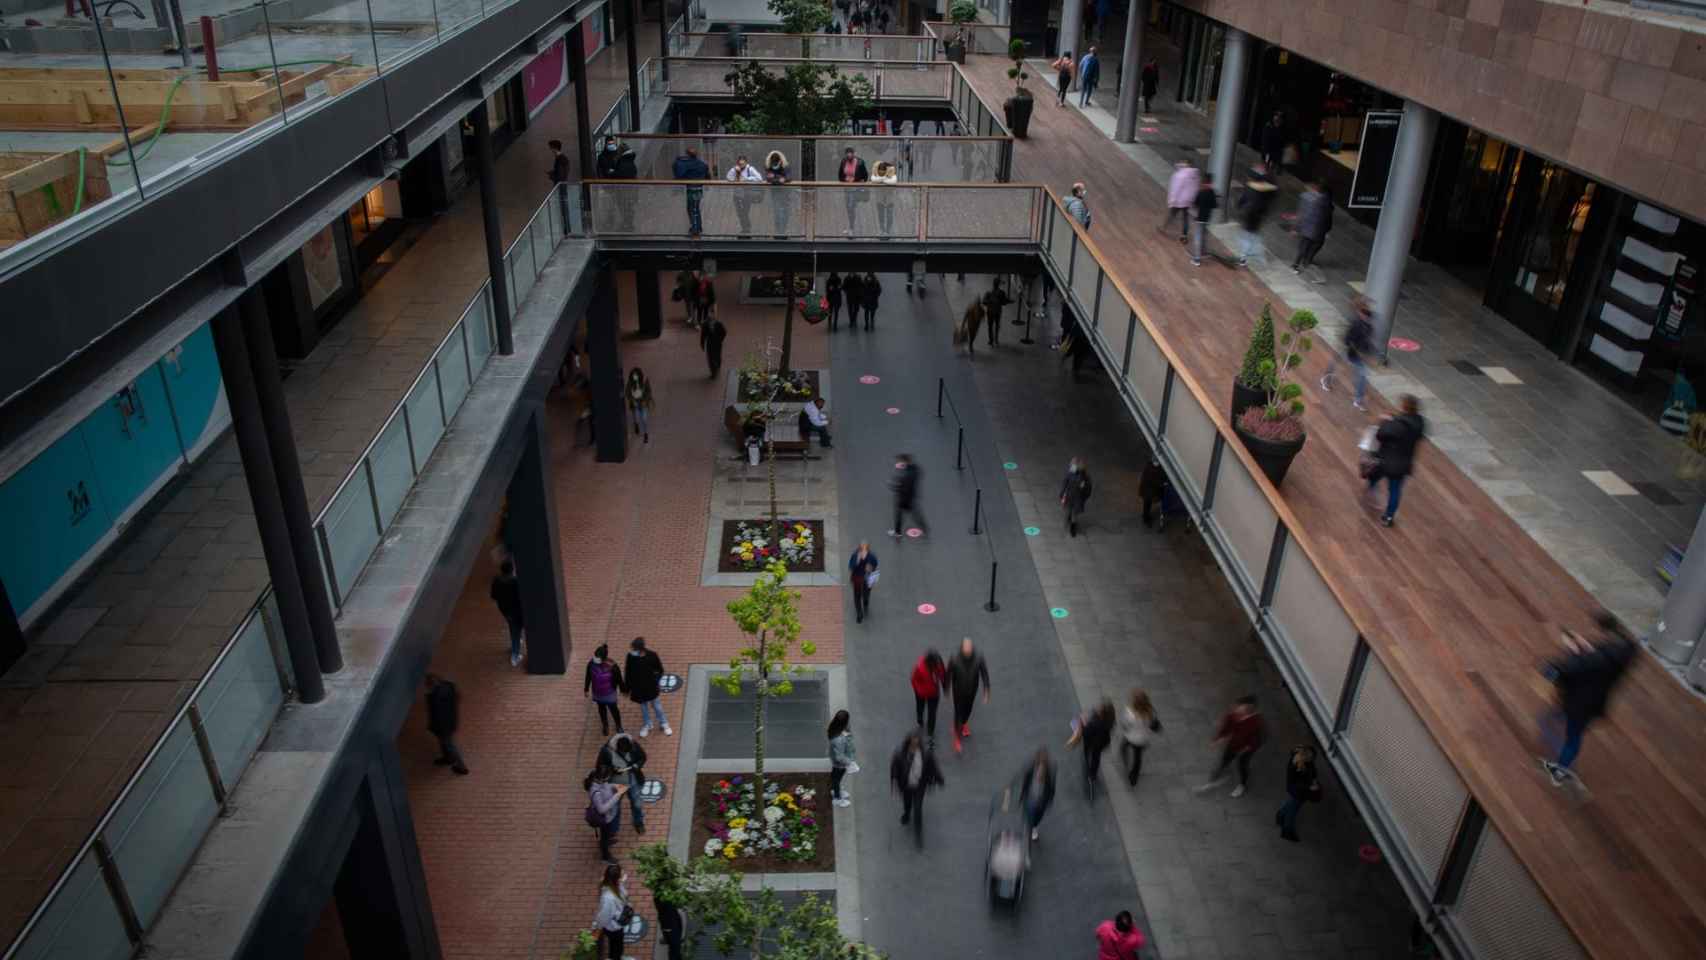 Centro Comercial La Maquinista en una imagen de archivo / EUROPA PRESS